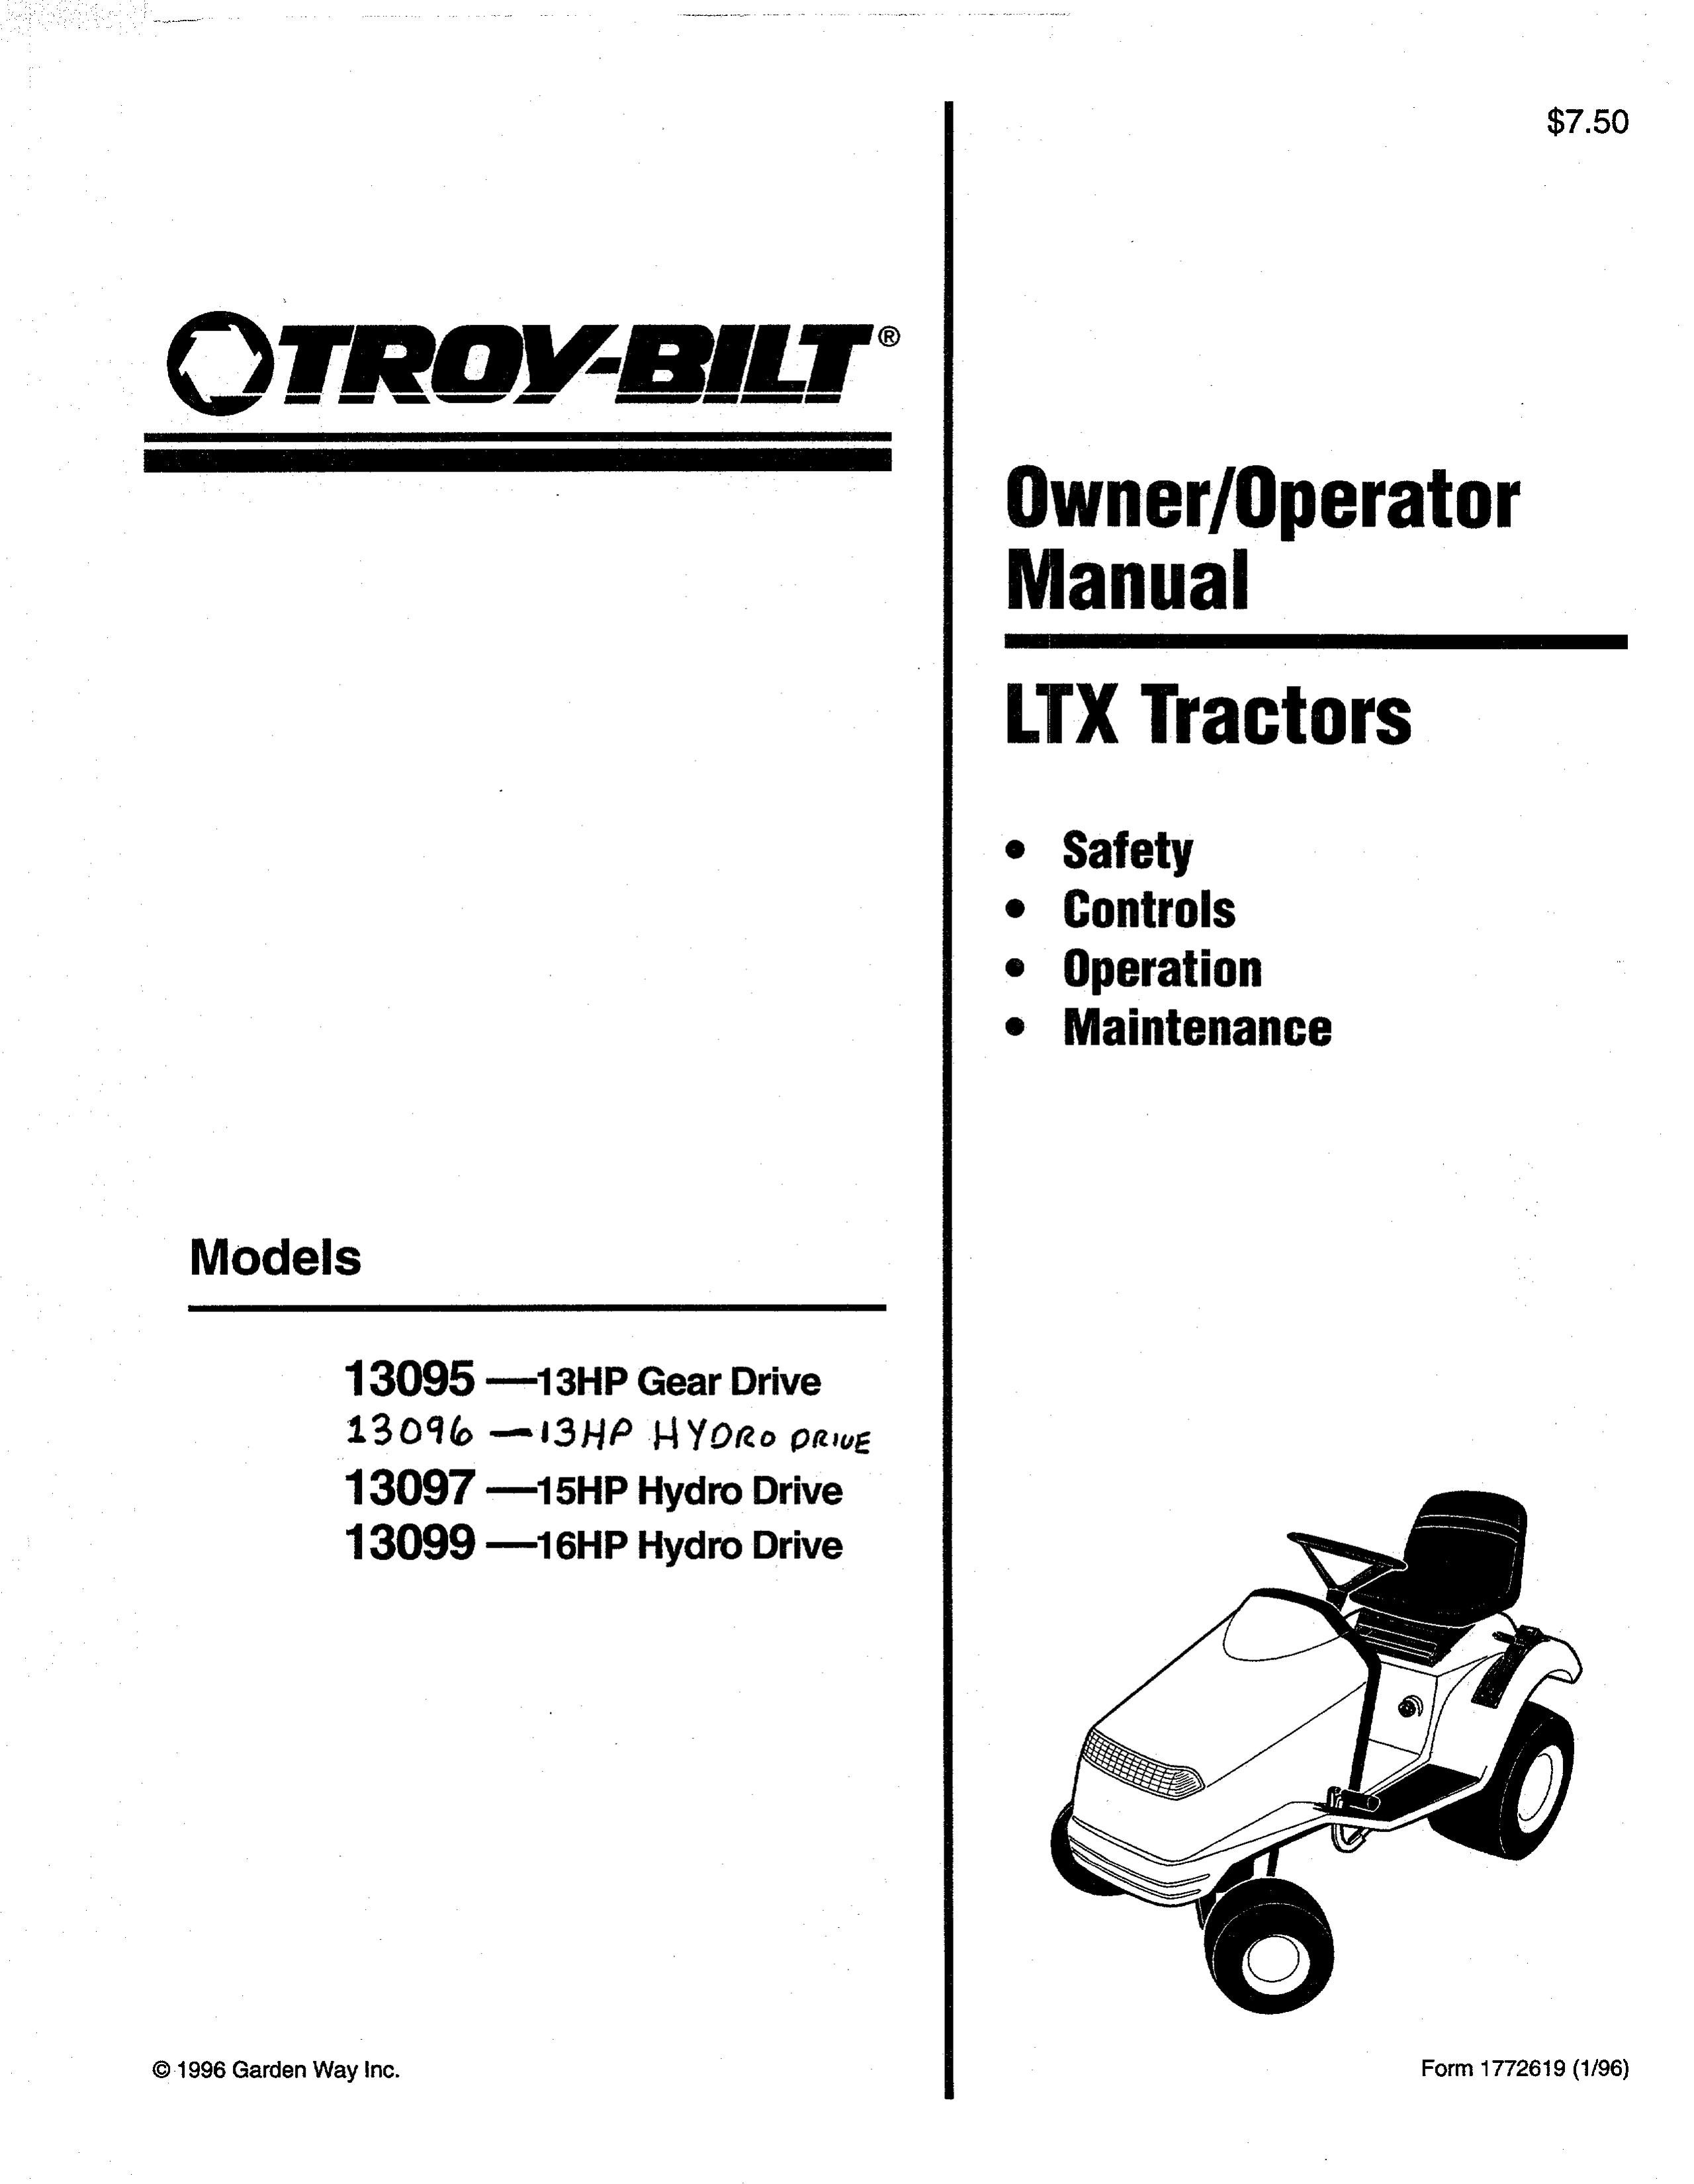 Troy-Bilt 13097 Lawn Mower User Manual